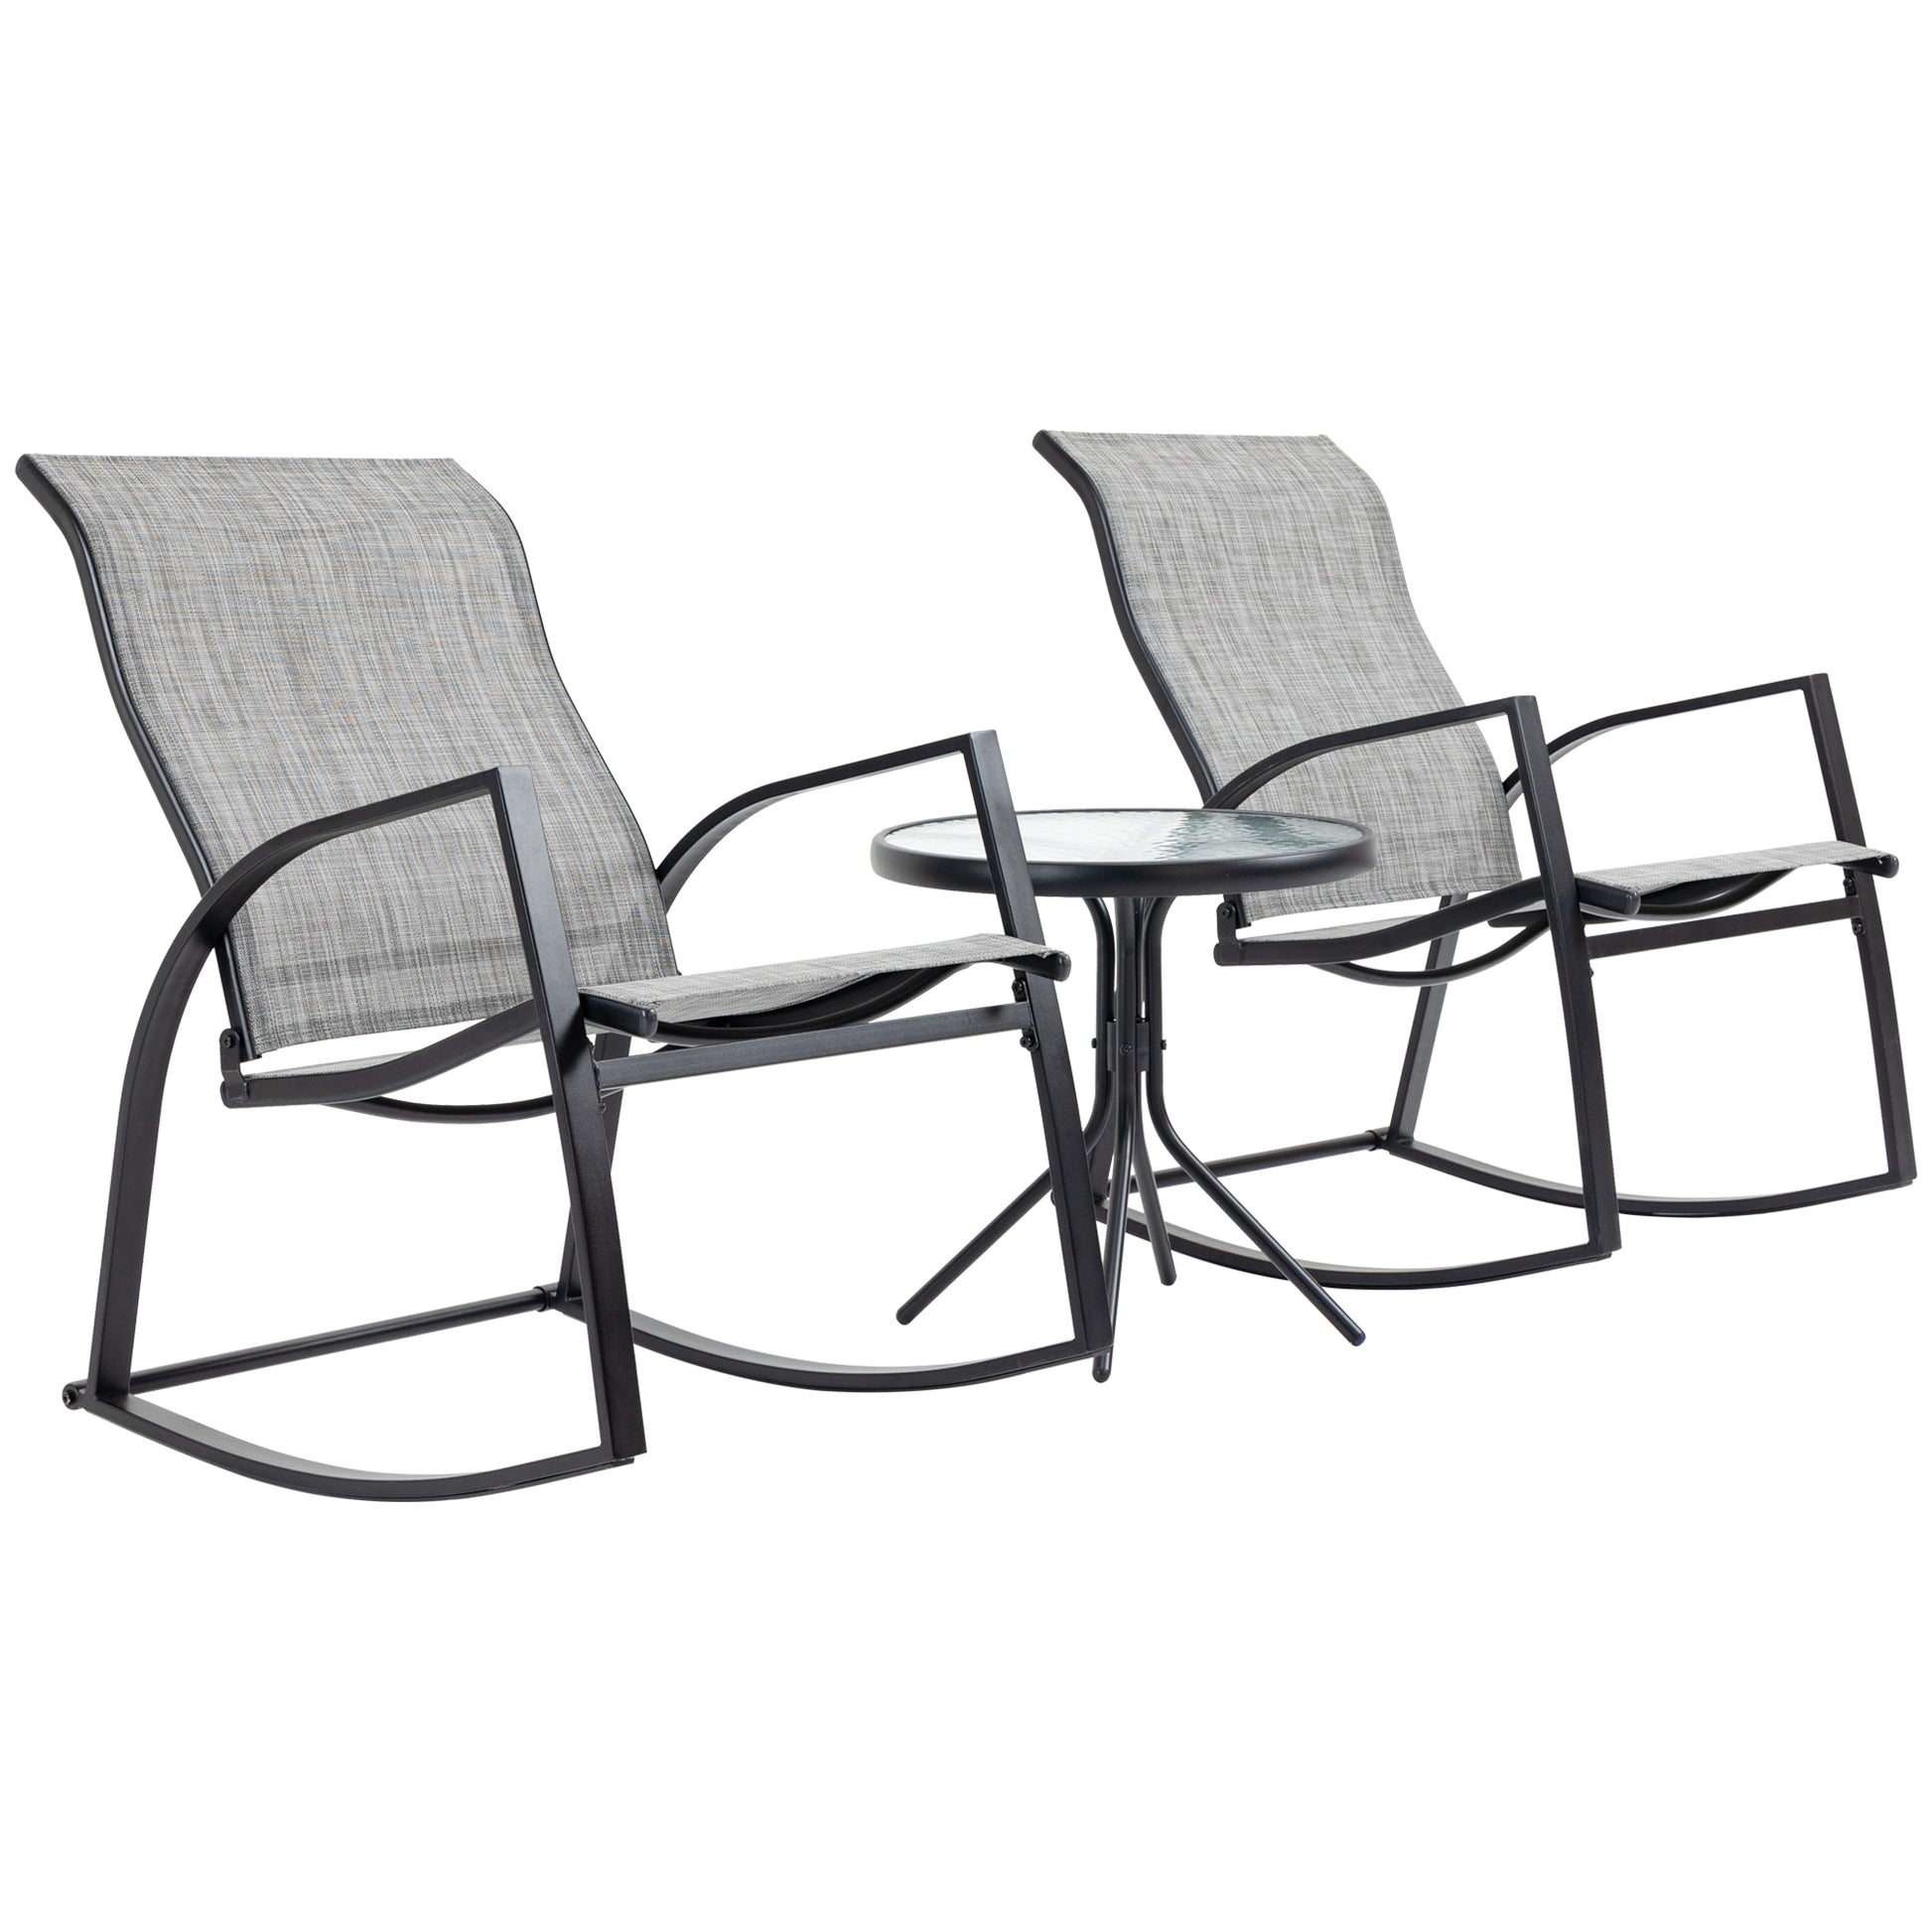 Garden Rocking Chairs